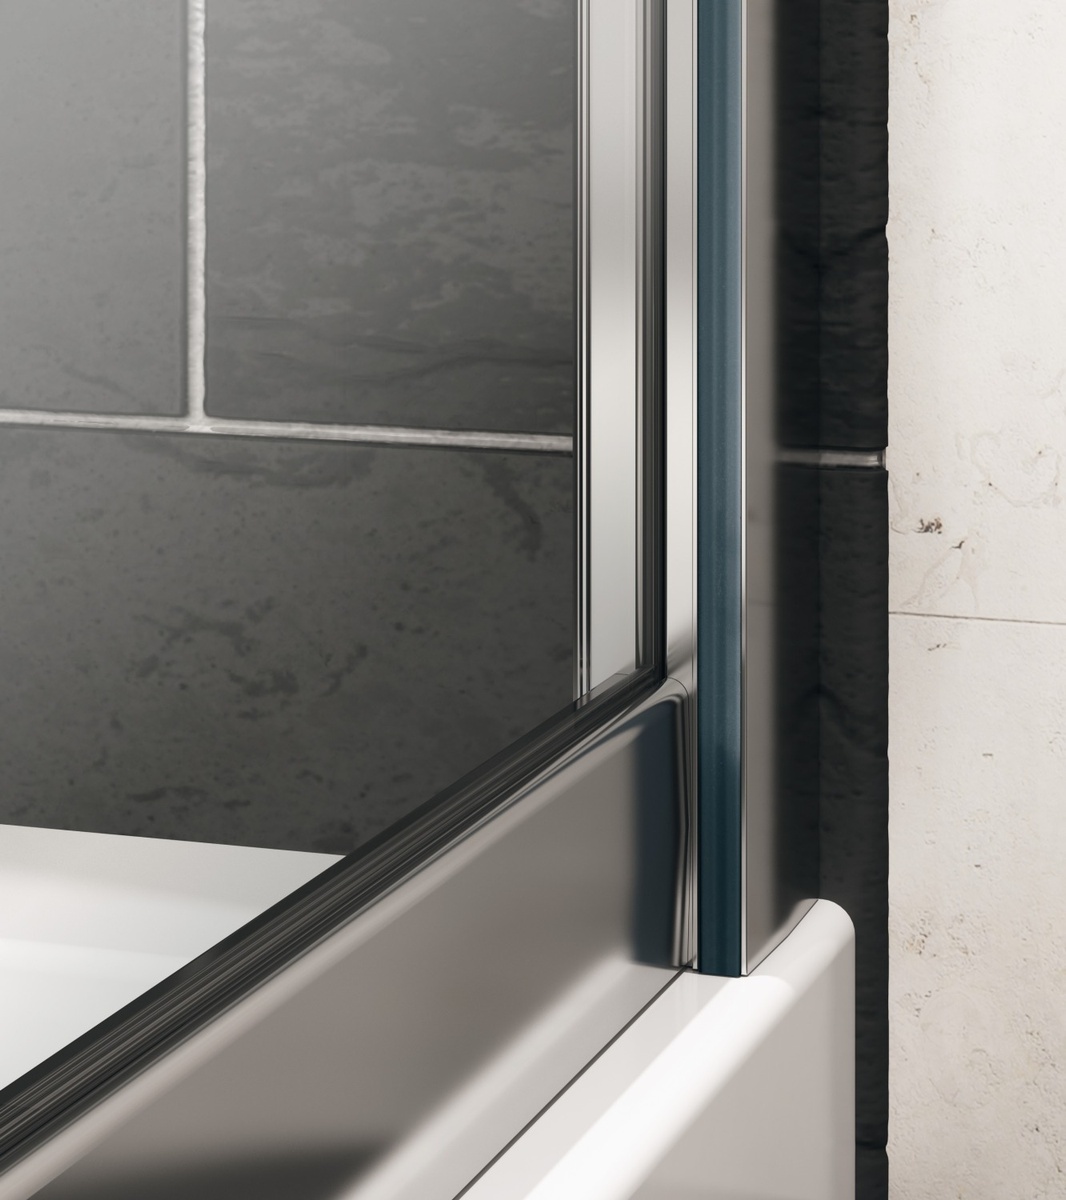 Двері скляні для душової ніші універсальні розпашні HUPPE X1 190x90см прозоре скло 6мм профіль хром 140703.069.322